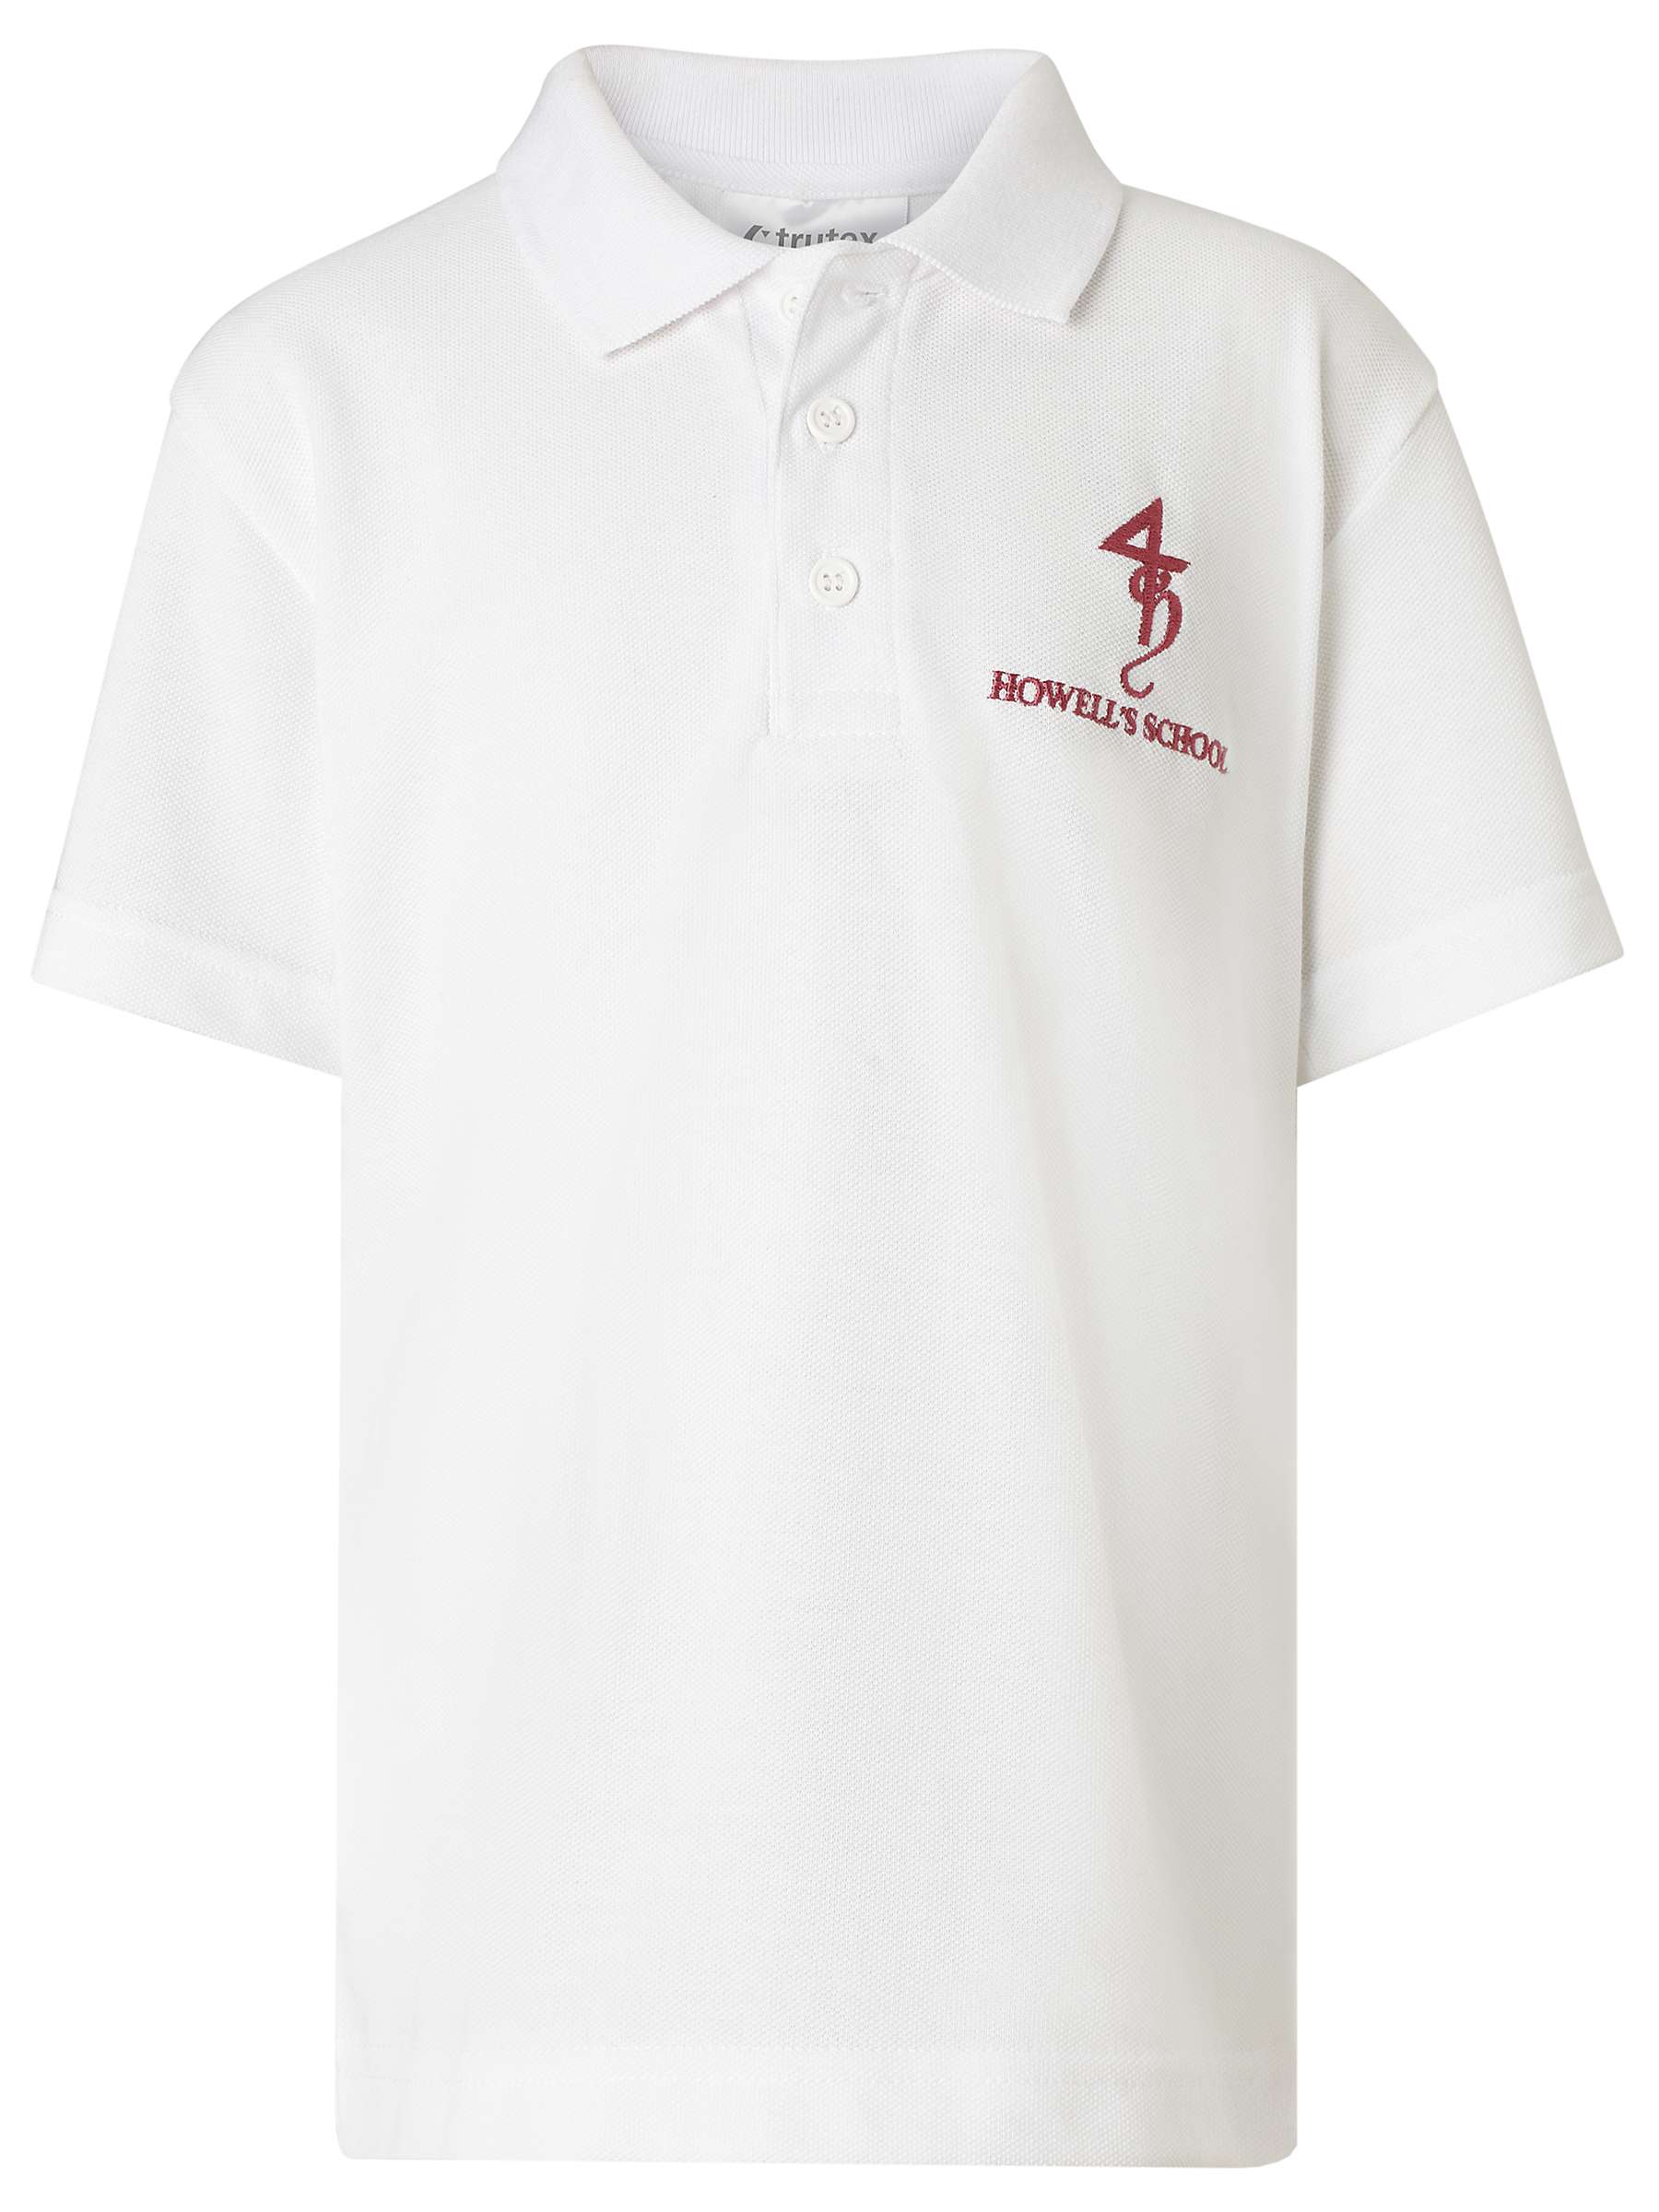 Buy Howell's School Girls' Sport Polo Shirt, White Online at johnlewis.com